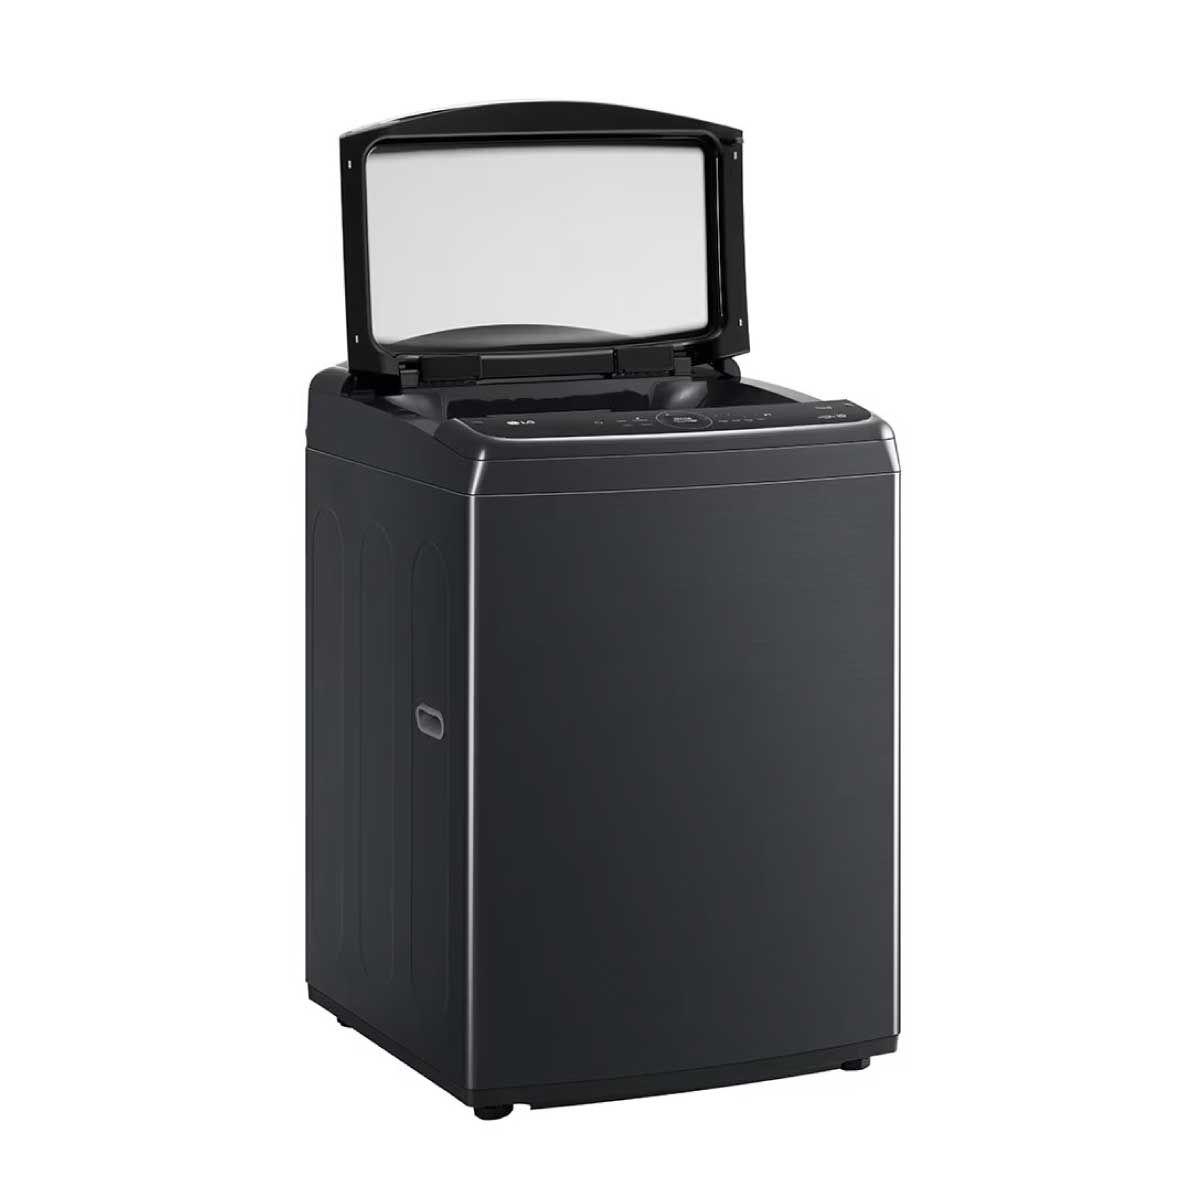 LG เครื่องซักผ้าฝาบน 24Kg WIFI สีดำ รุ่น TV2724SV9B